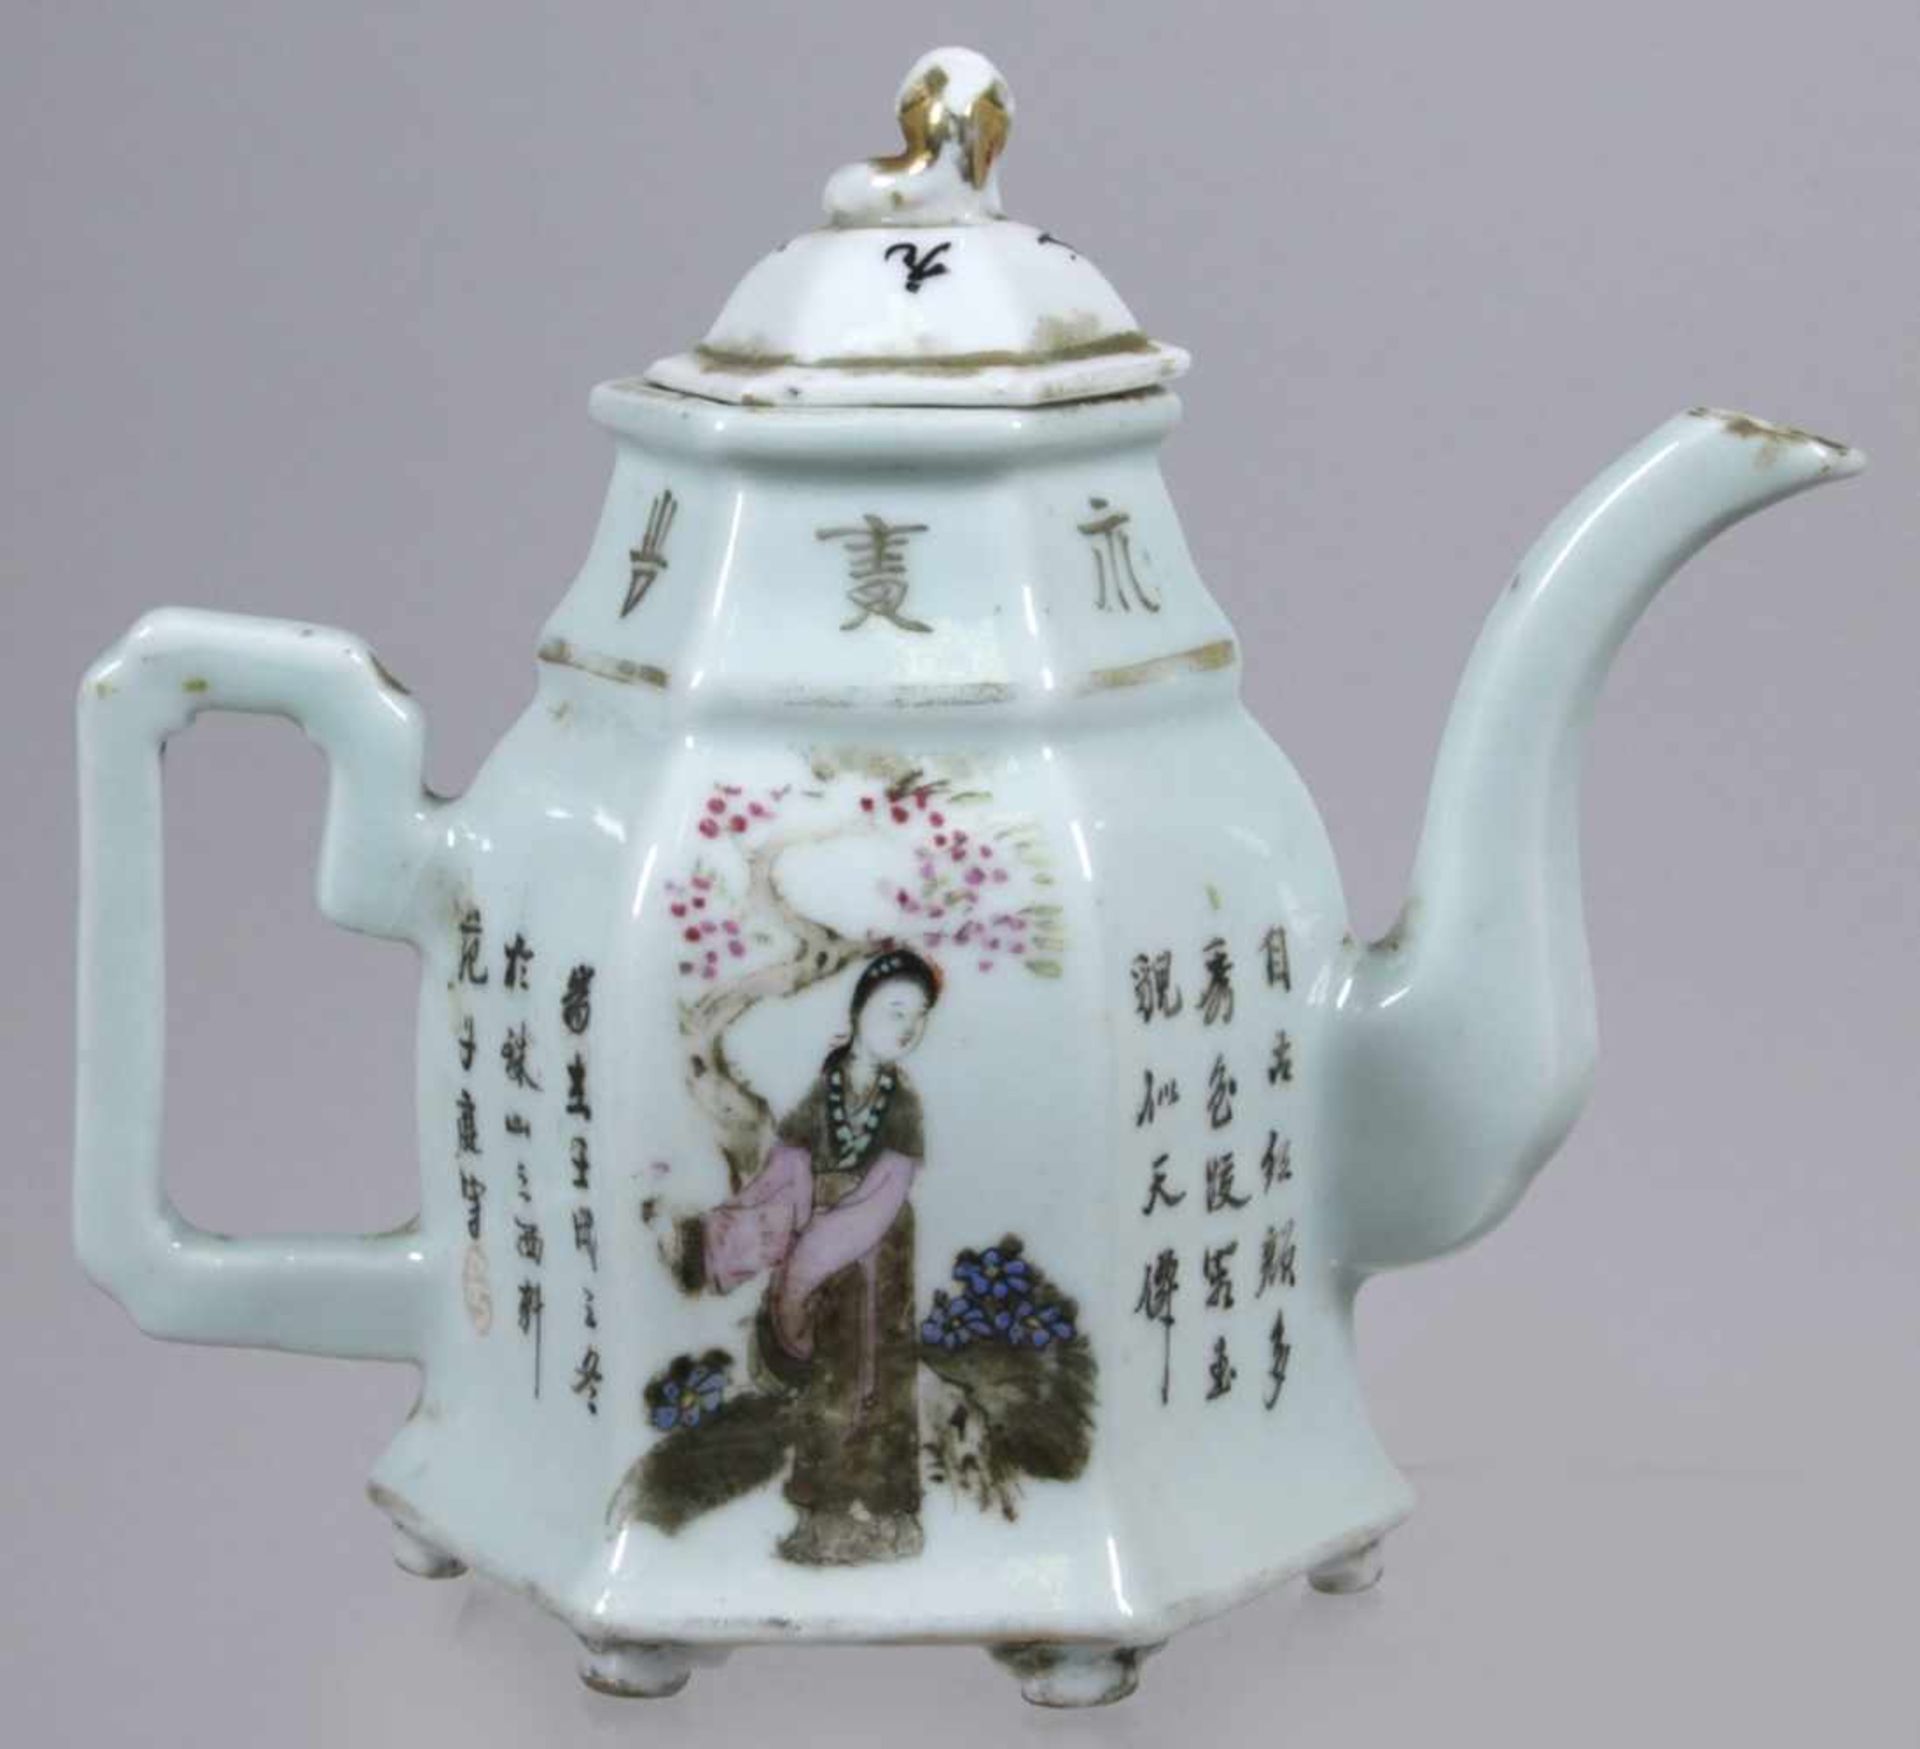 Porzellan-Teekanne, China, um 1900, über 6 Nuppenfüßchen sechseckiger Korpus mit kantigemHenkel - Bild 2 aus 6